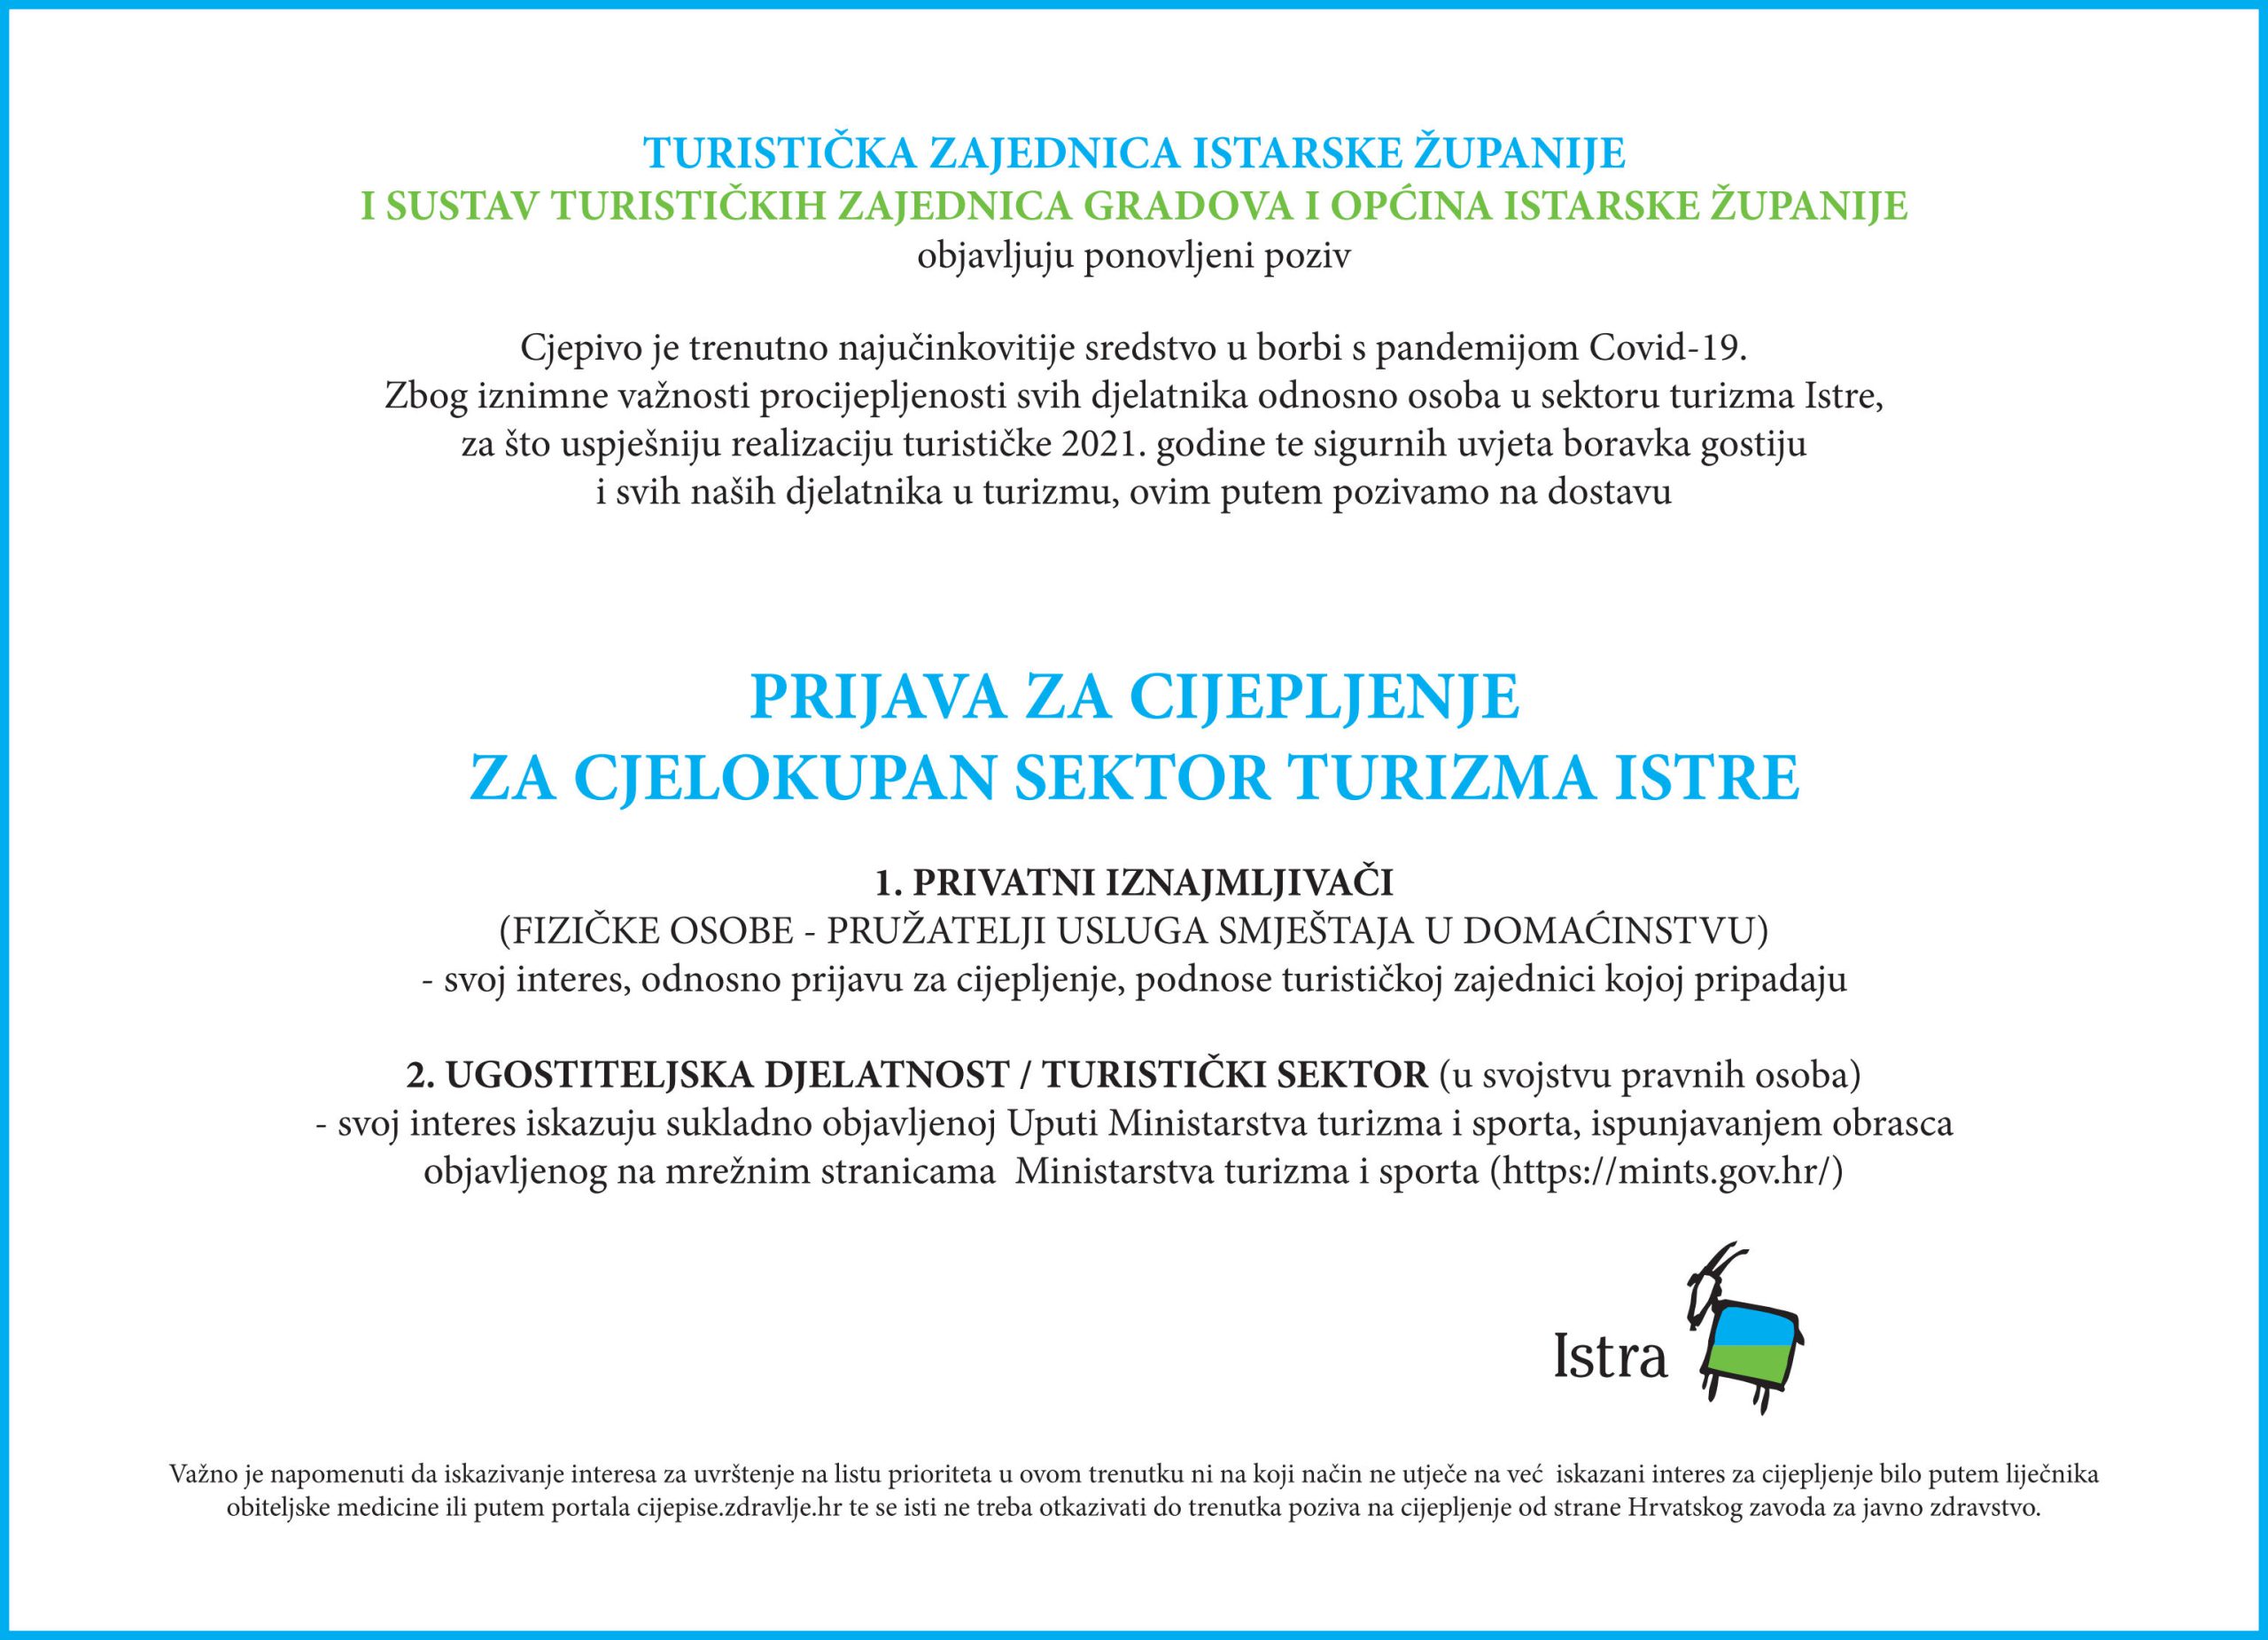 Ponovljeni poziv na cijepljenje za cjelokupan sektor turizma Istre